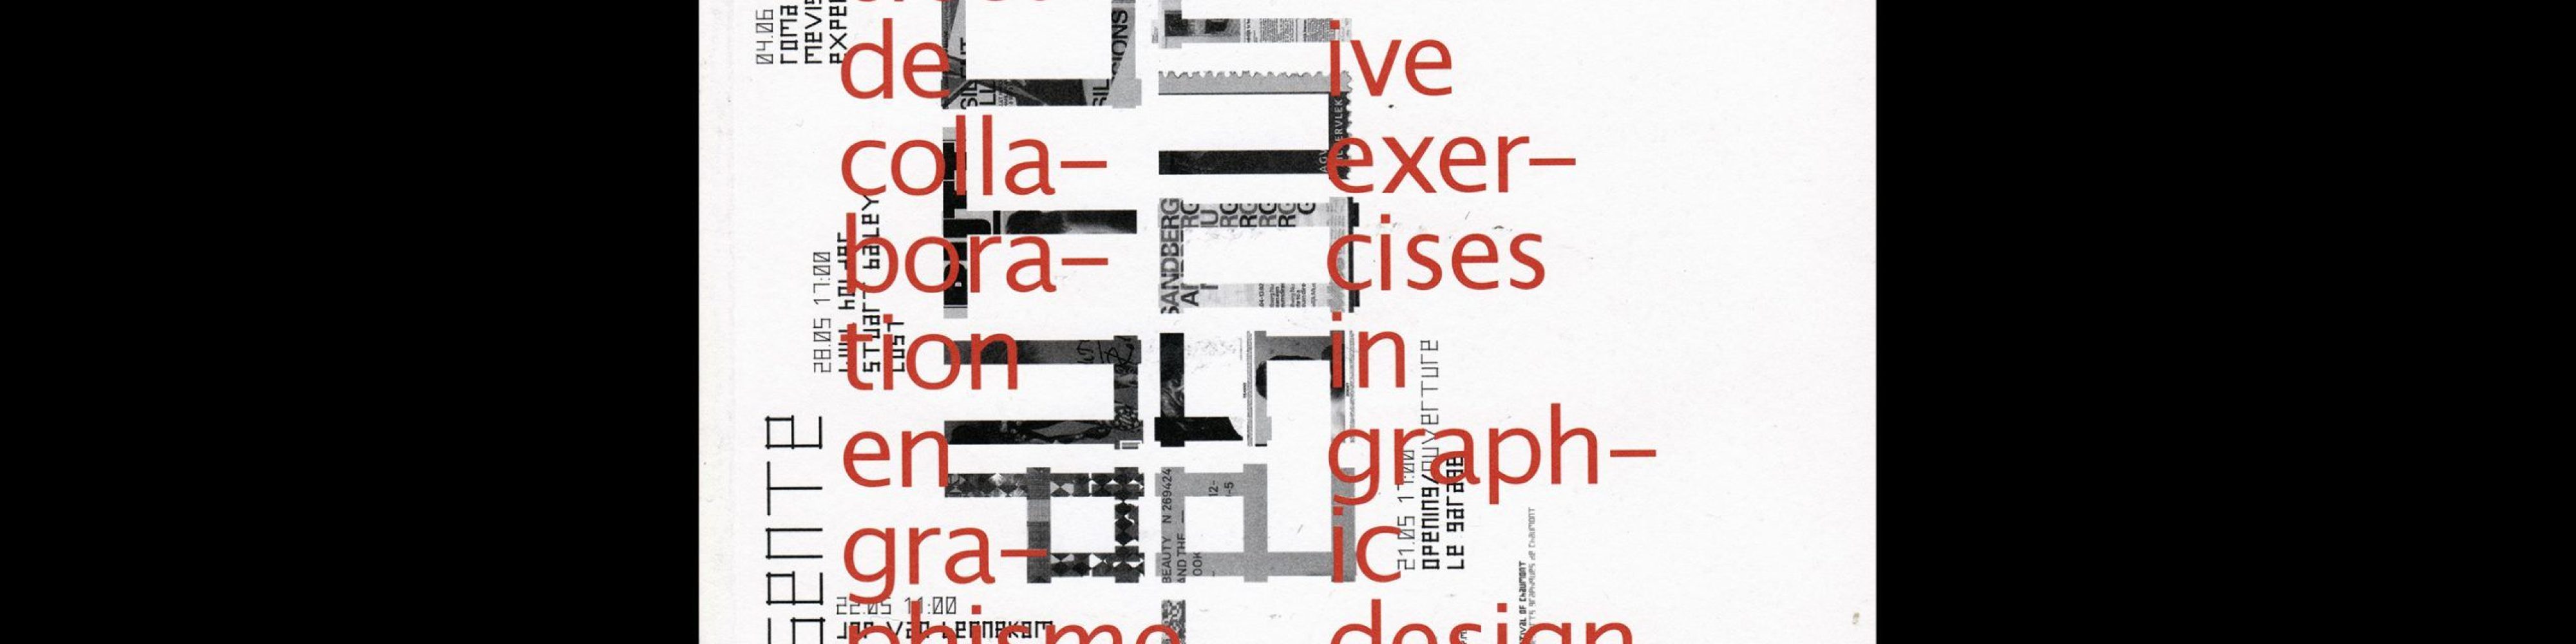 Dutch Resource Collaborative Exercises in Graphic Design, 2005 | Werkplaats Typografie